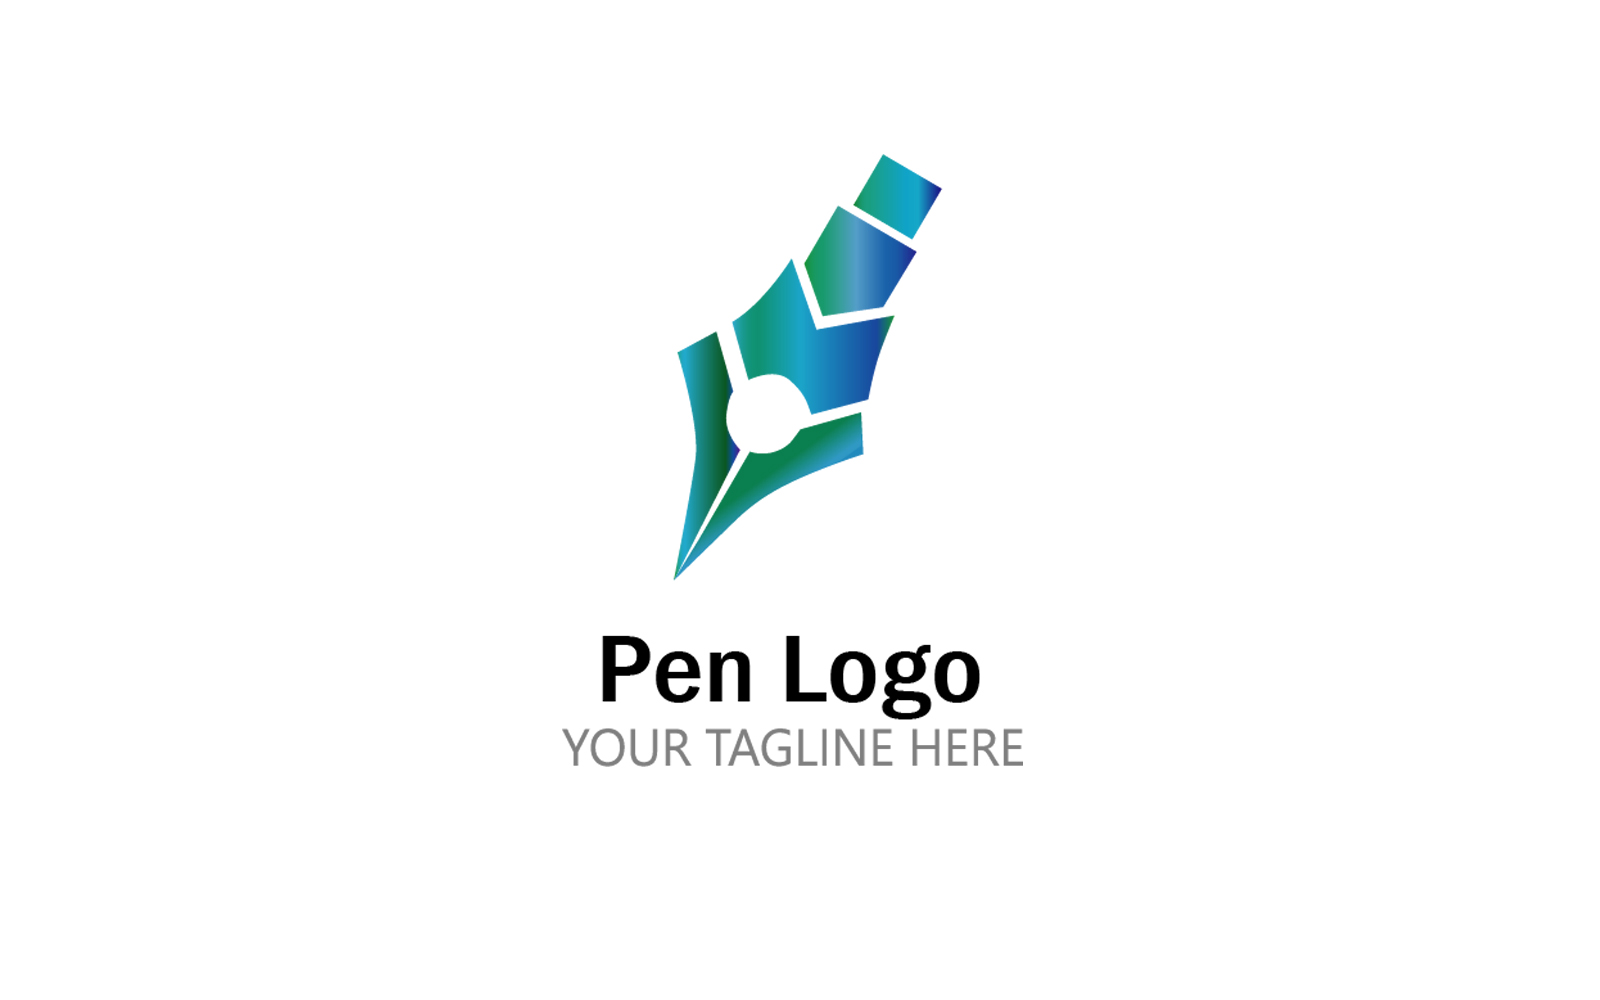 Academic & University - Online University Logo Maker